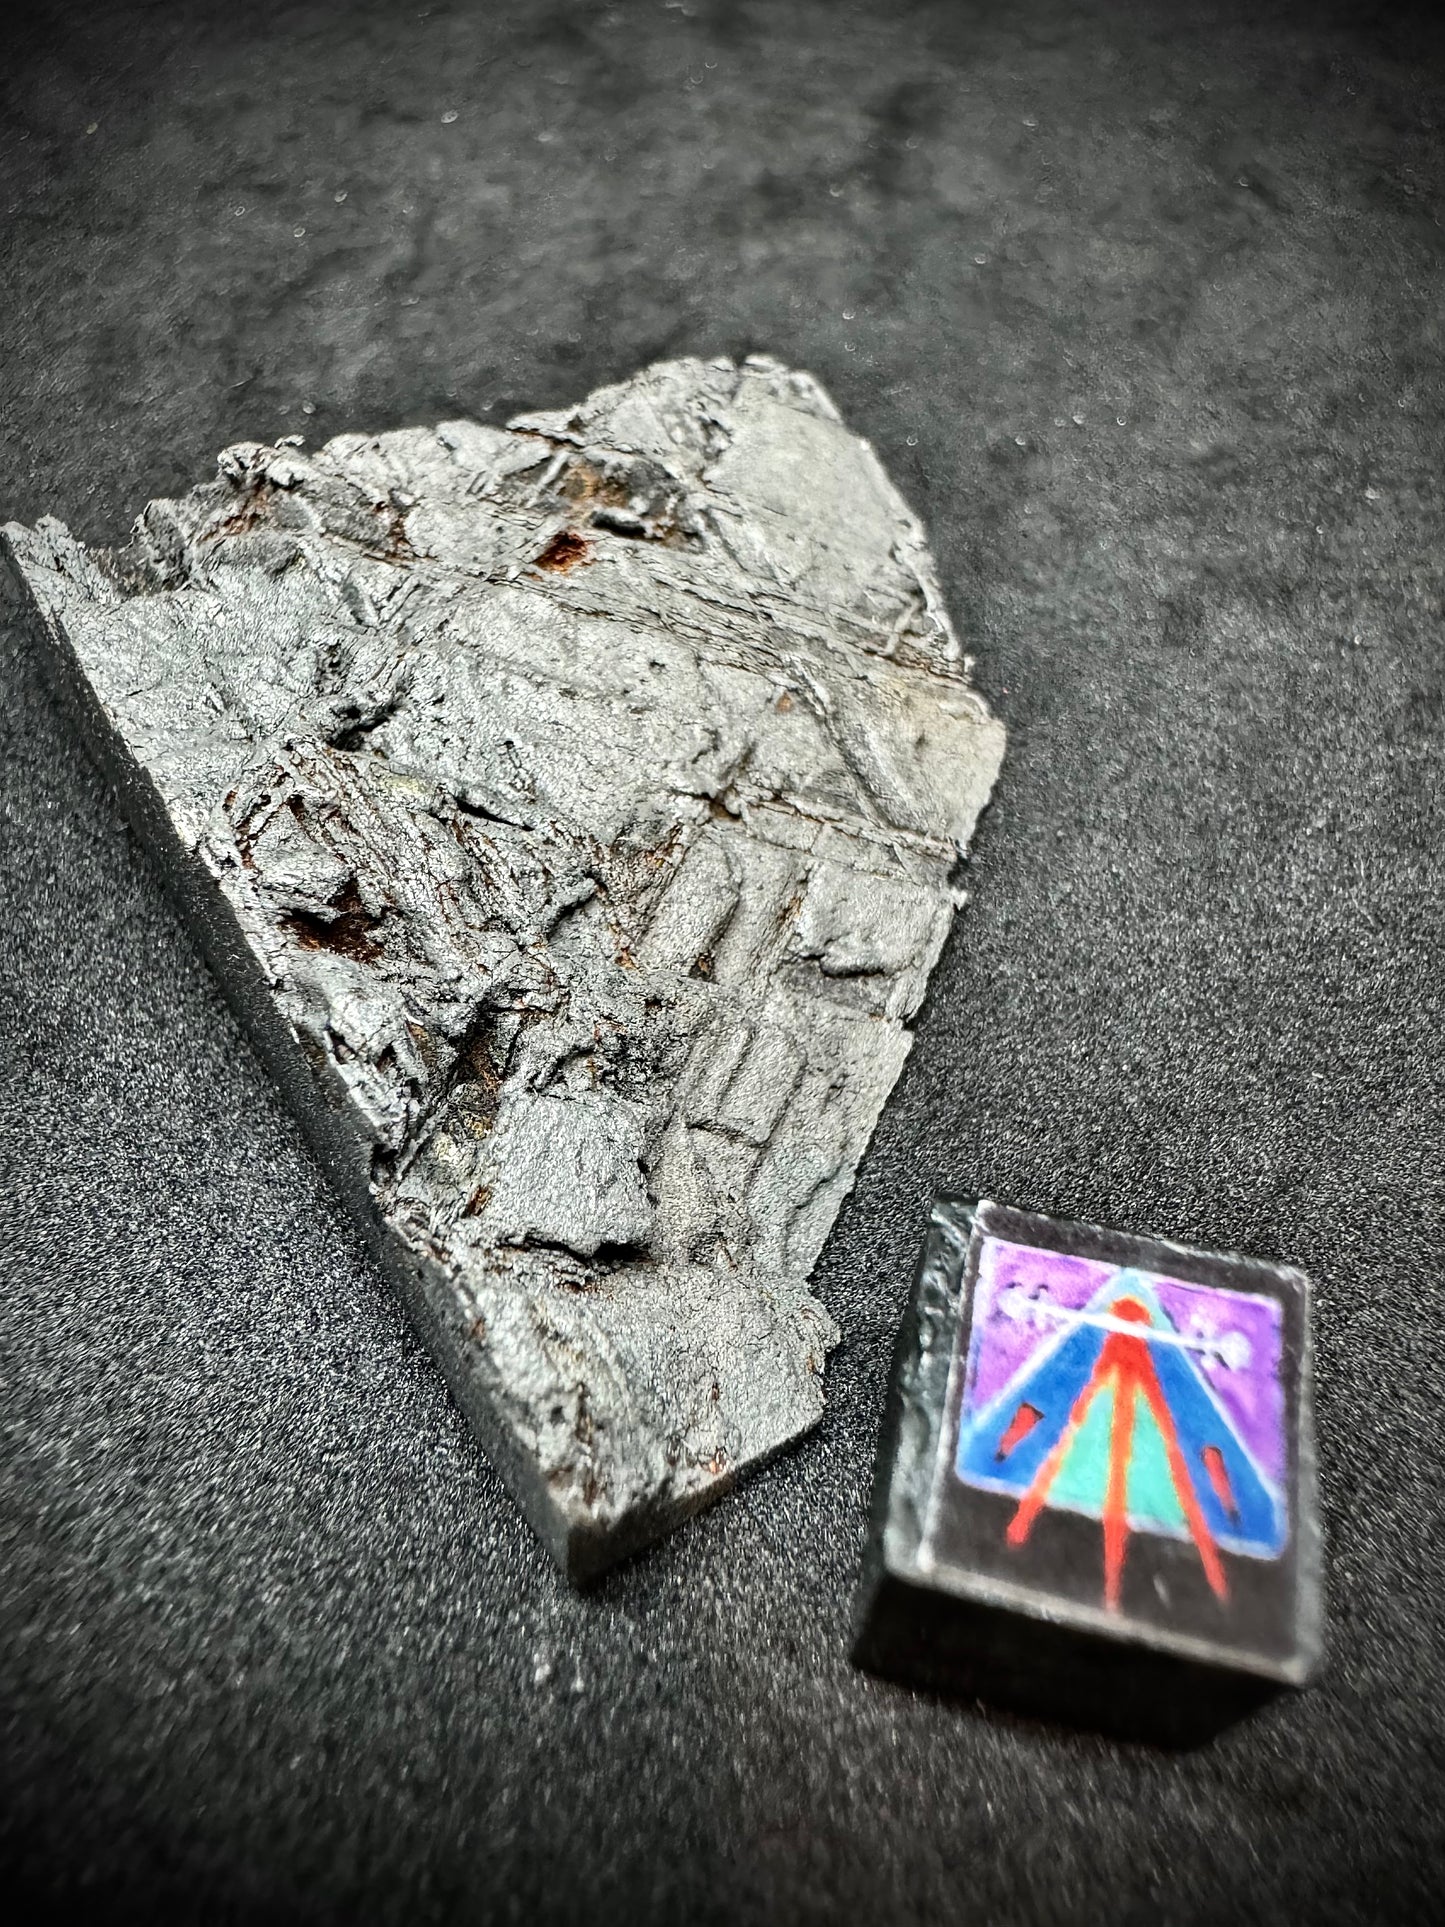 Muonionalusta Iron Meteorite - End Piece - 71.9g